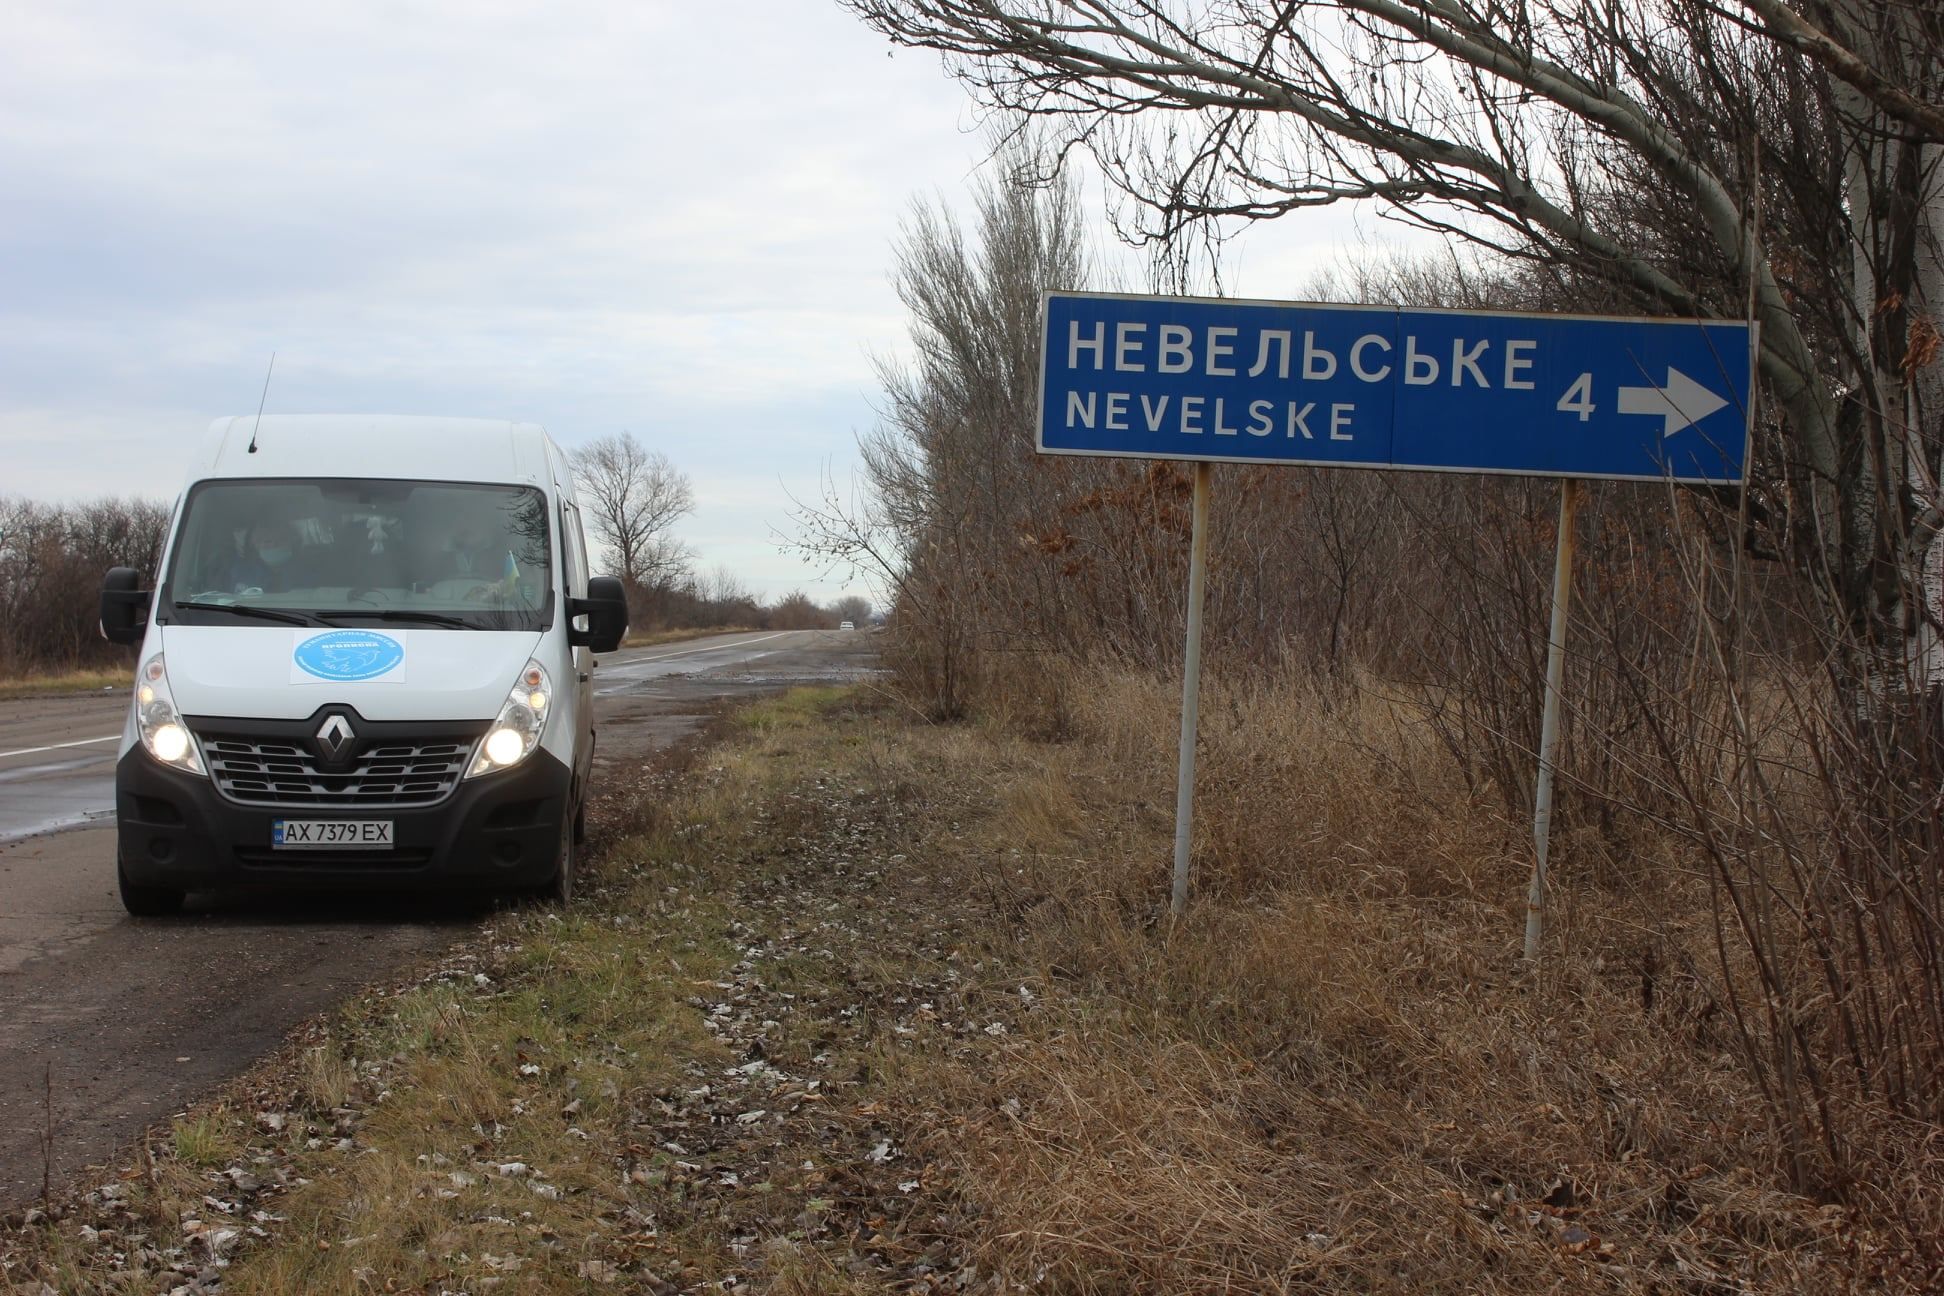 Прифронтове Невельське через обстріли покинули майже всі жителі - Новини Донецька сьогодні - 24 Канал